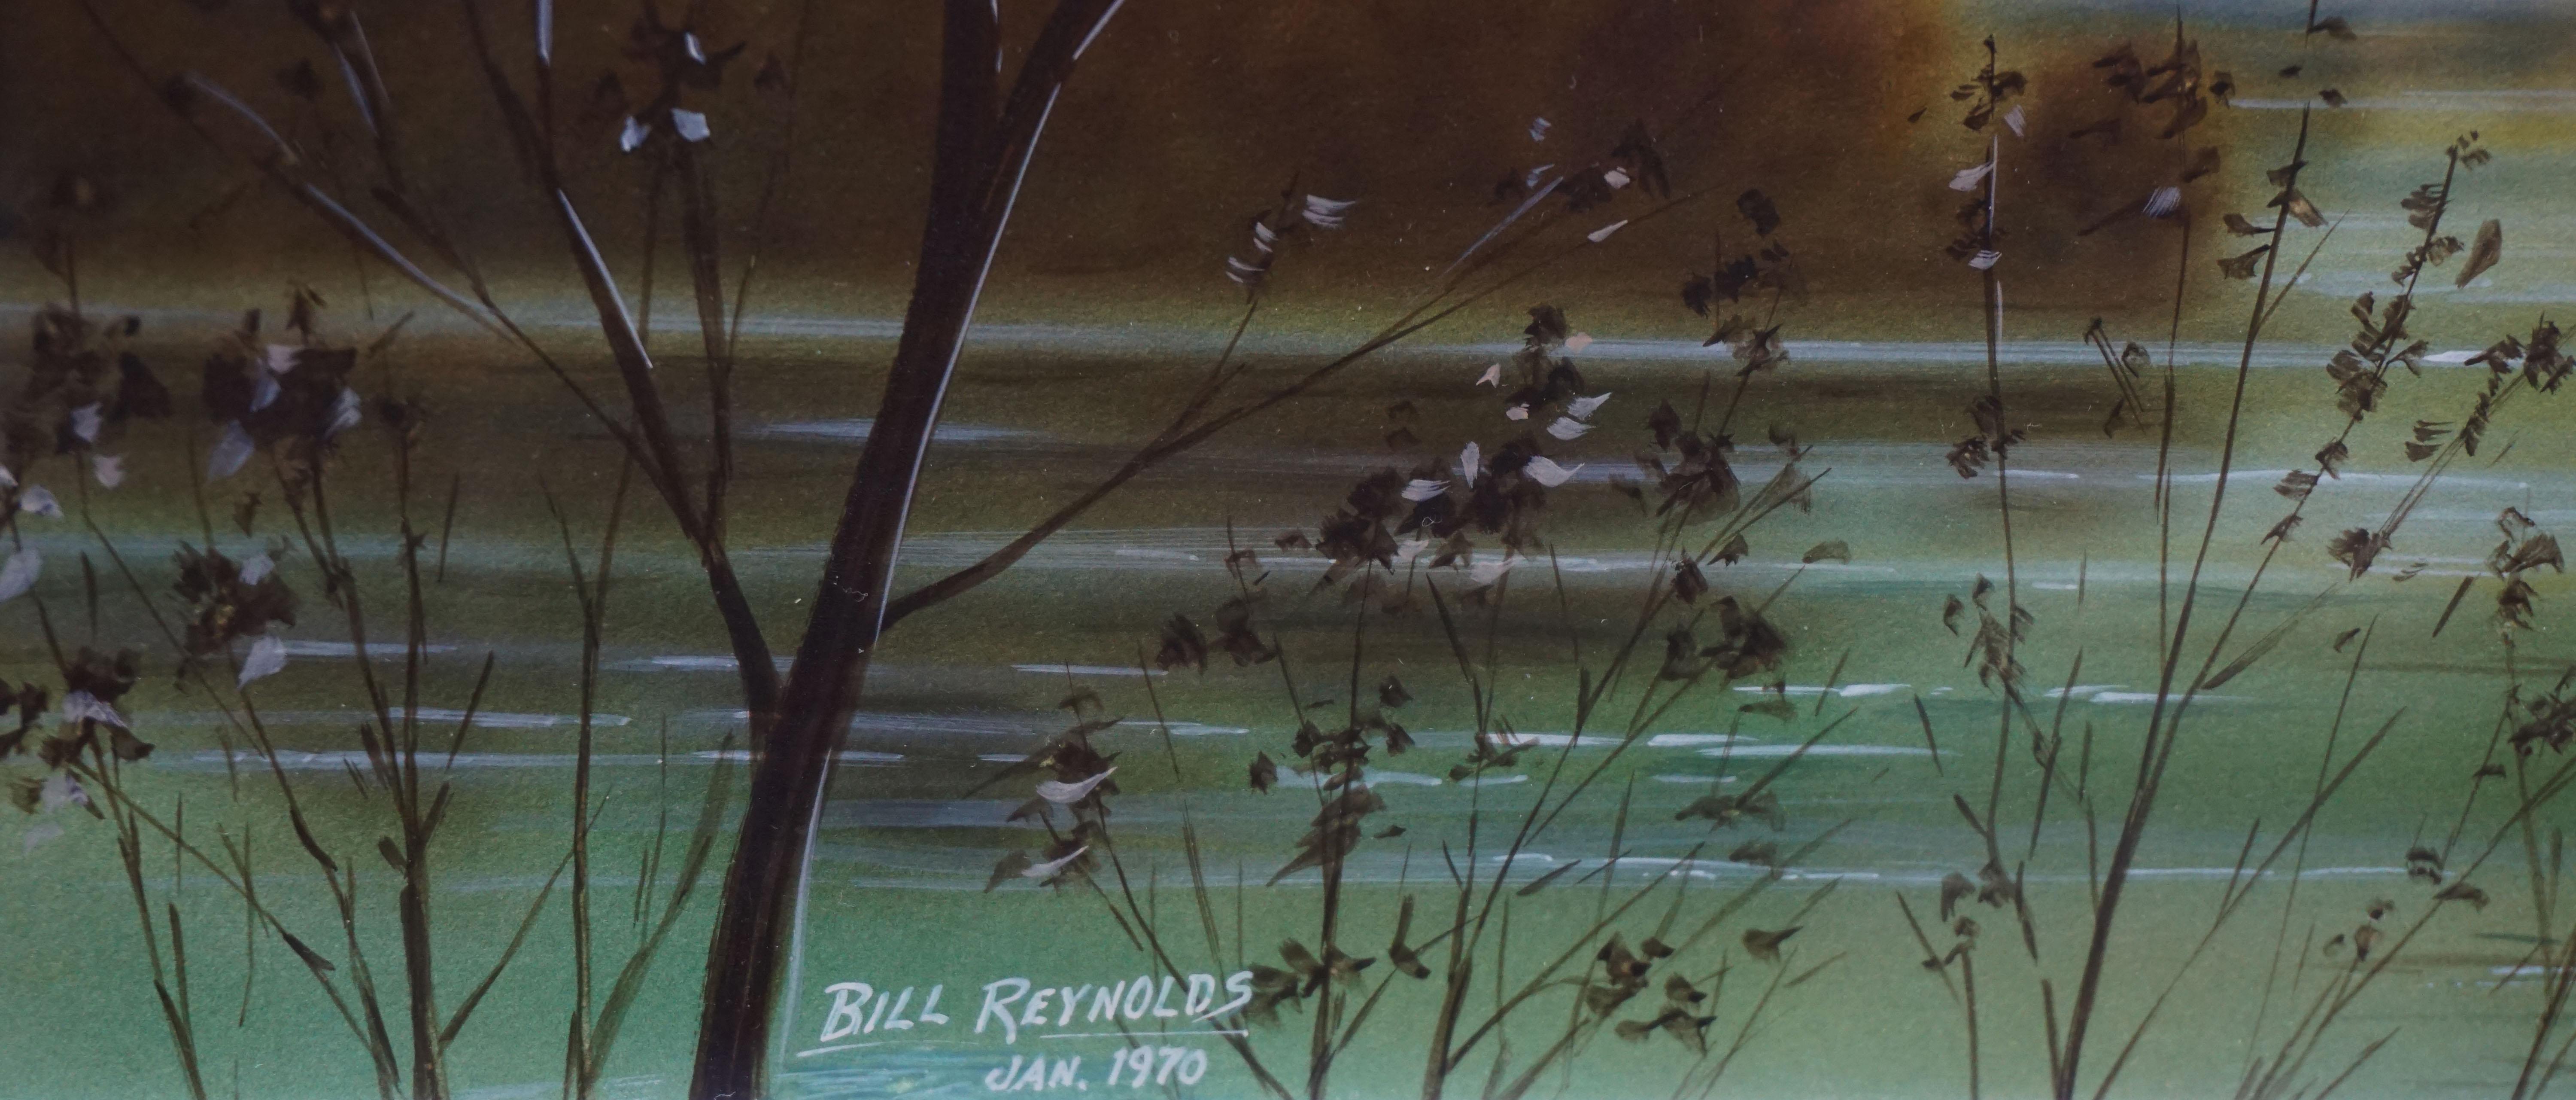 Wunderschönes Aquarell/Gouache-Gemälde einer Entenfamilie, die in der Morgendämmerung in einem See schwimmt, von Bill Reynolds (Amerikaner, 1918-2008), 1970. Der Vordergrund ist scharf abgebildet, während der Hintergrund in eine